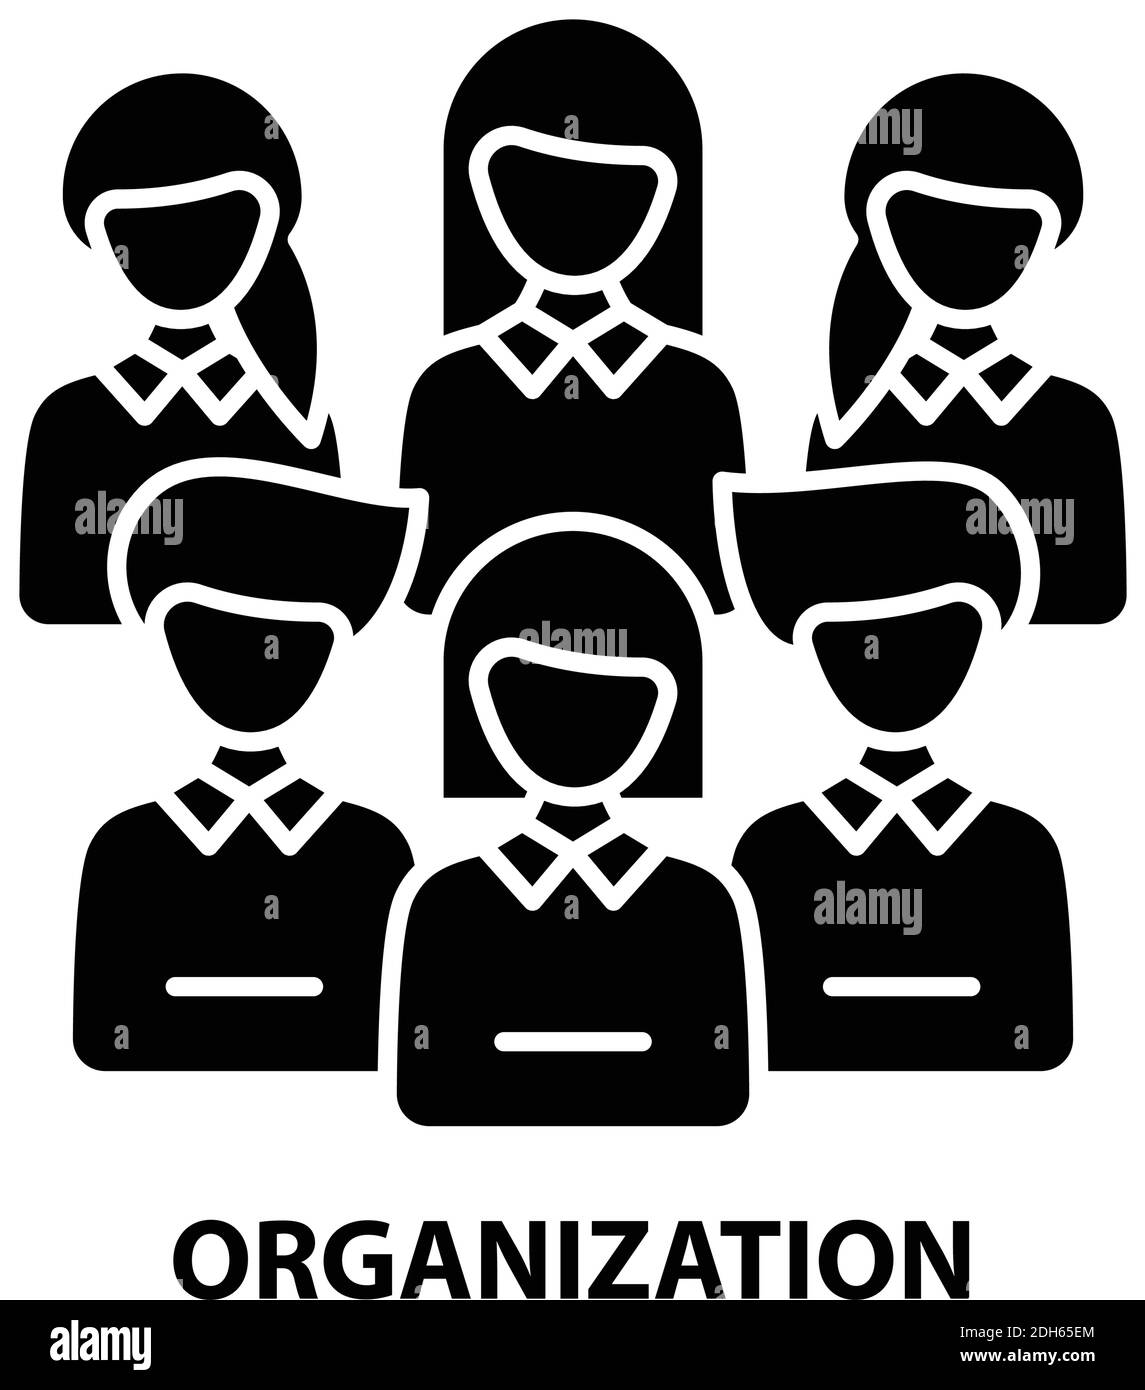 Organisationssymbol, schwarzes Vektorzeichen mit editierbaren Konturen, Konzeptdarstellung Stock Vektor